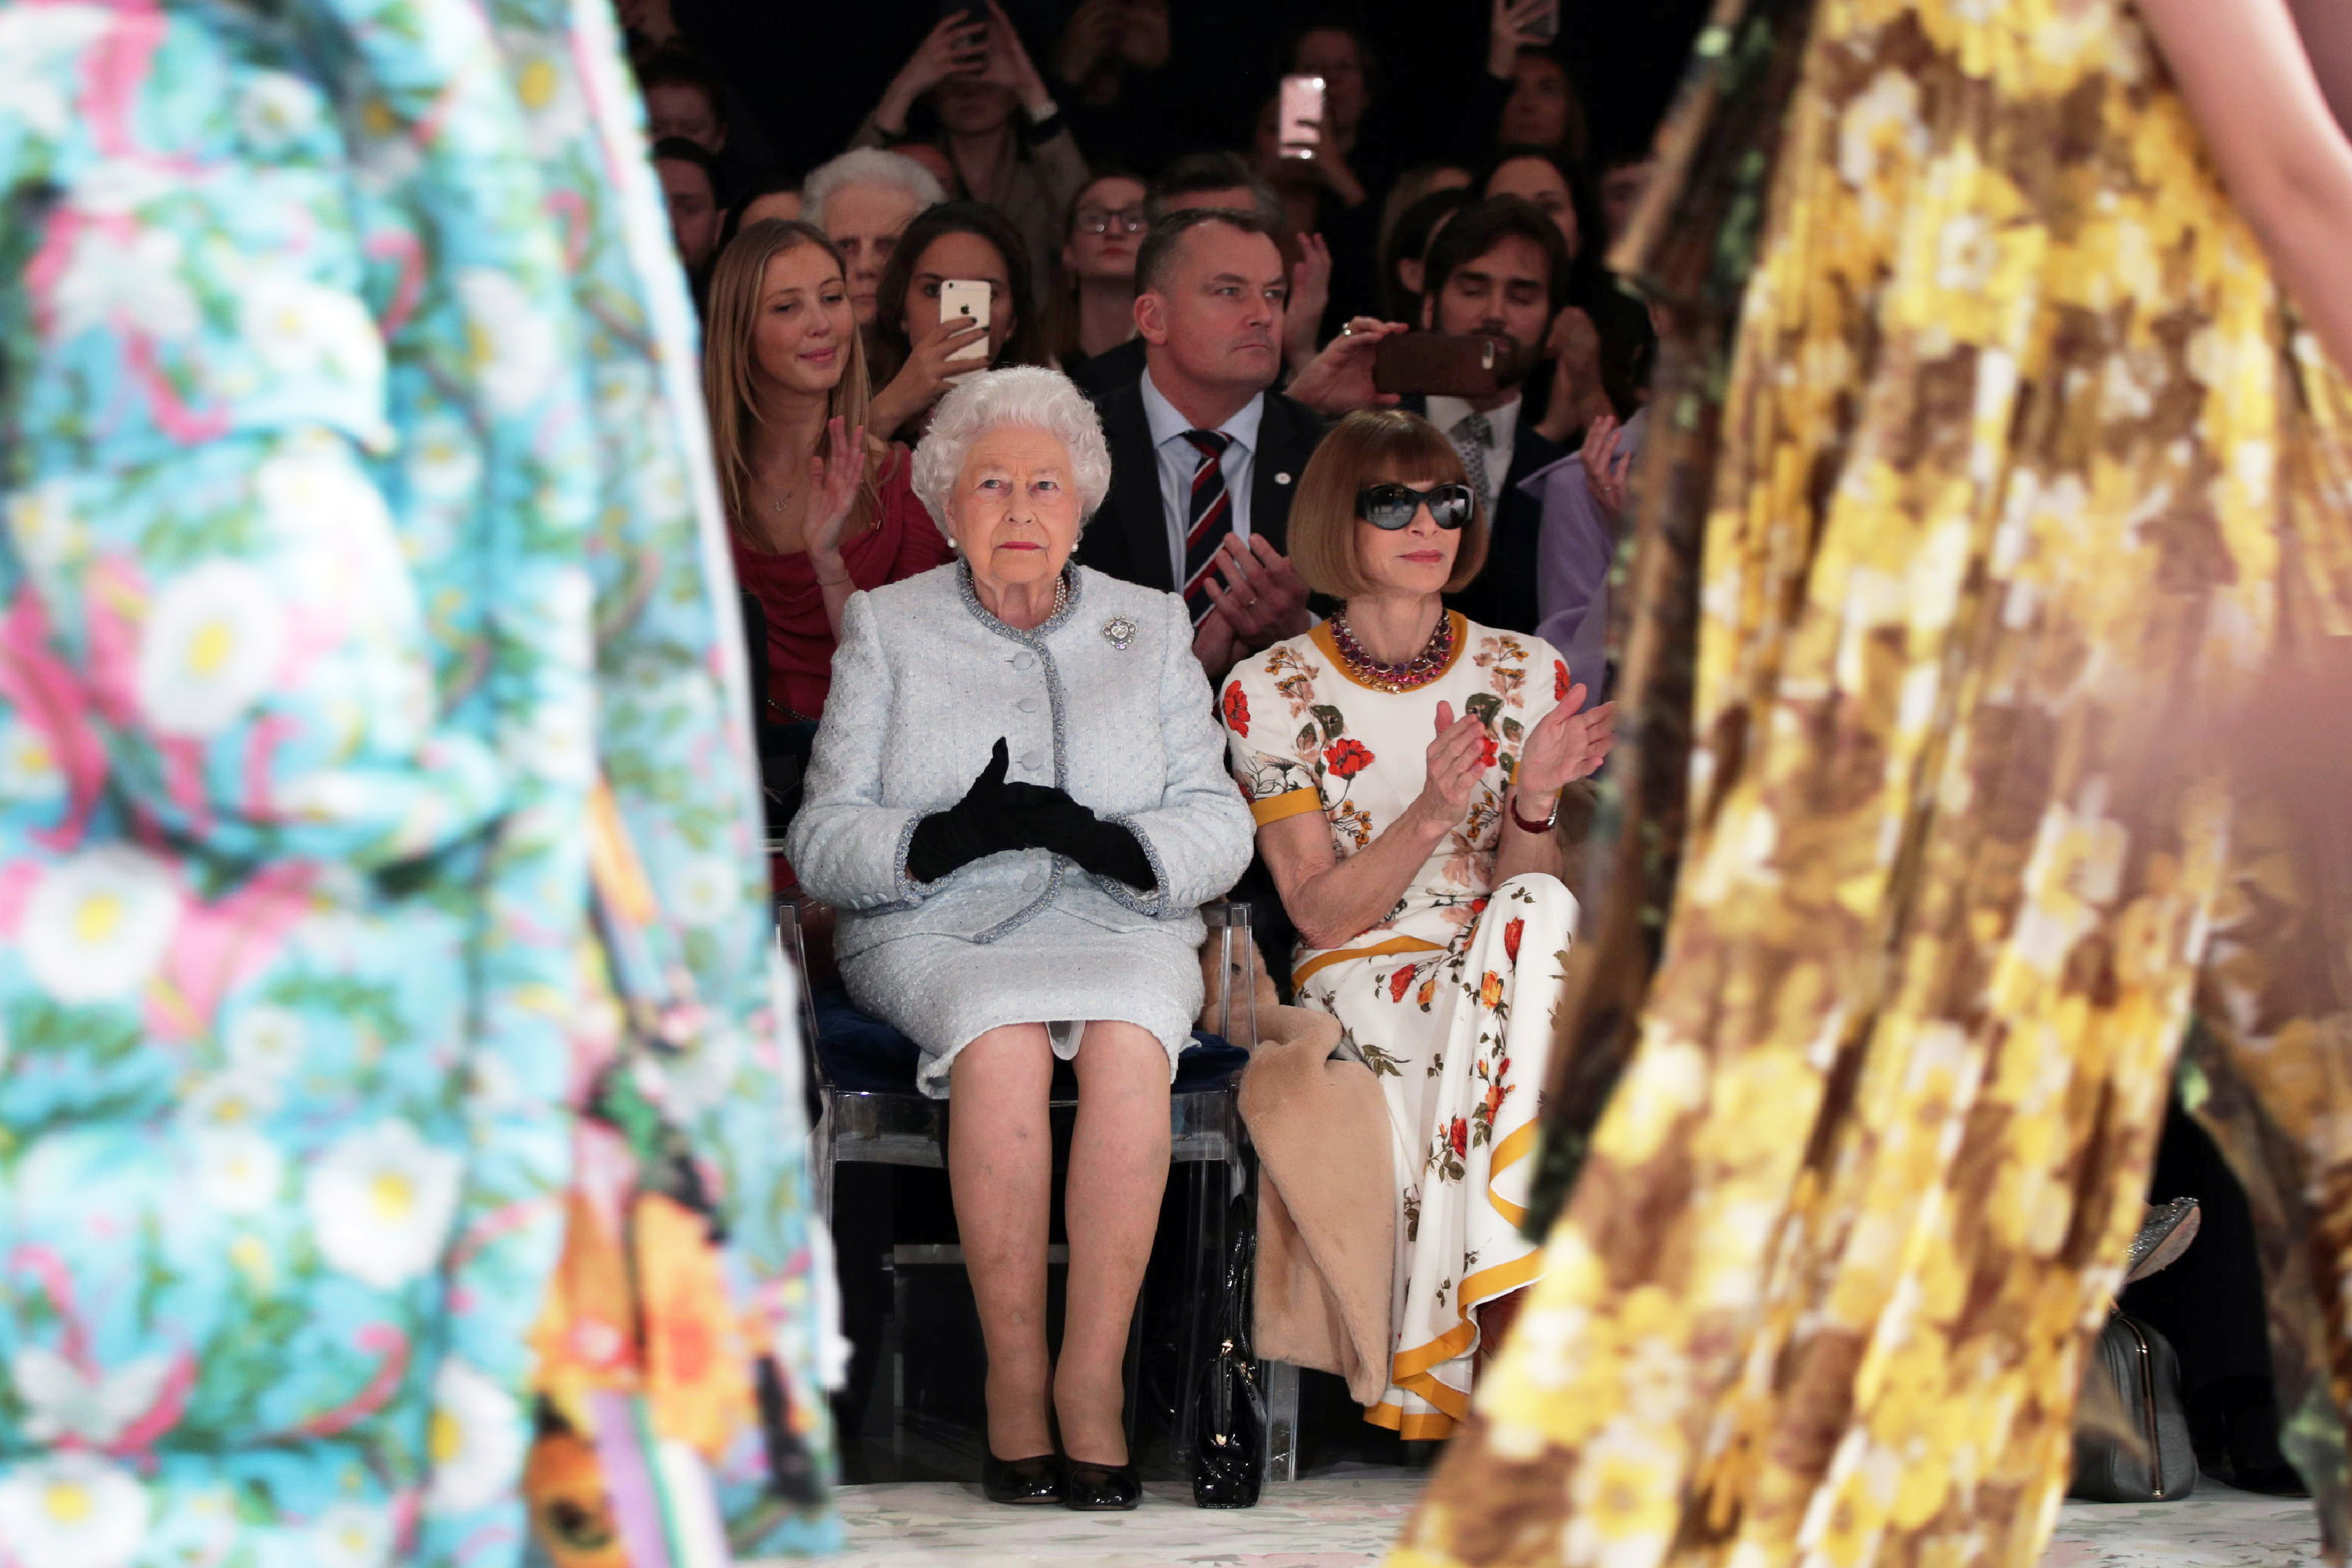 リチャード・クインのランウェイショーに出席したエリザベス女王。ファッション誌「ヴォーグ」の編集者アナ・ウィンターの隣に座っている/YUI MOK/AFP/AFP/Getty Images